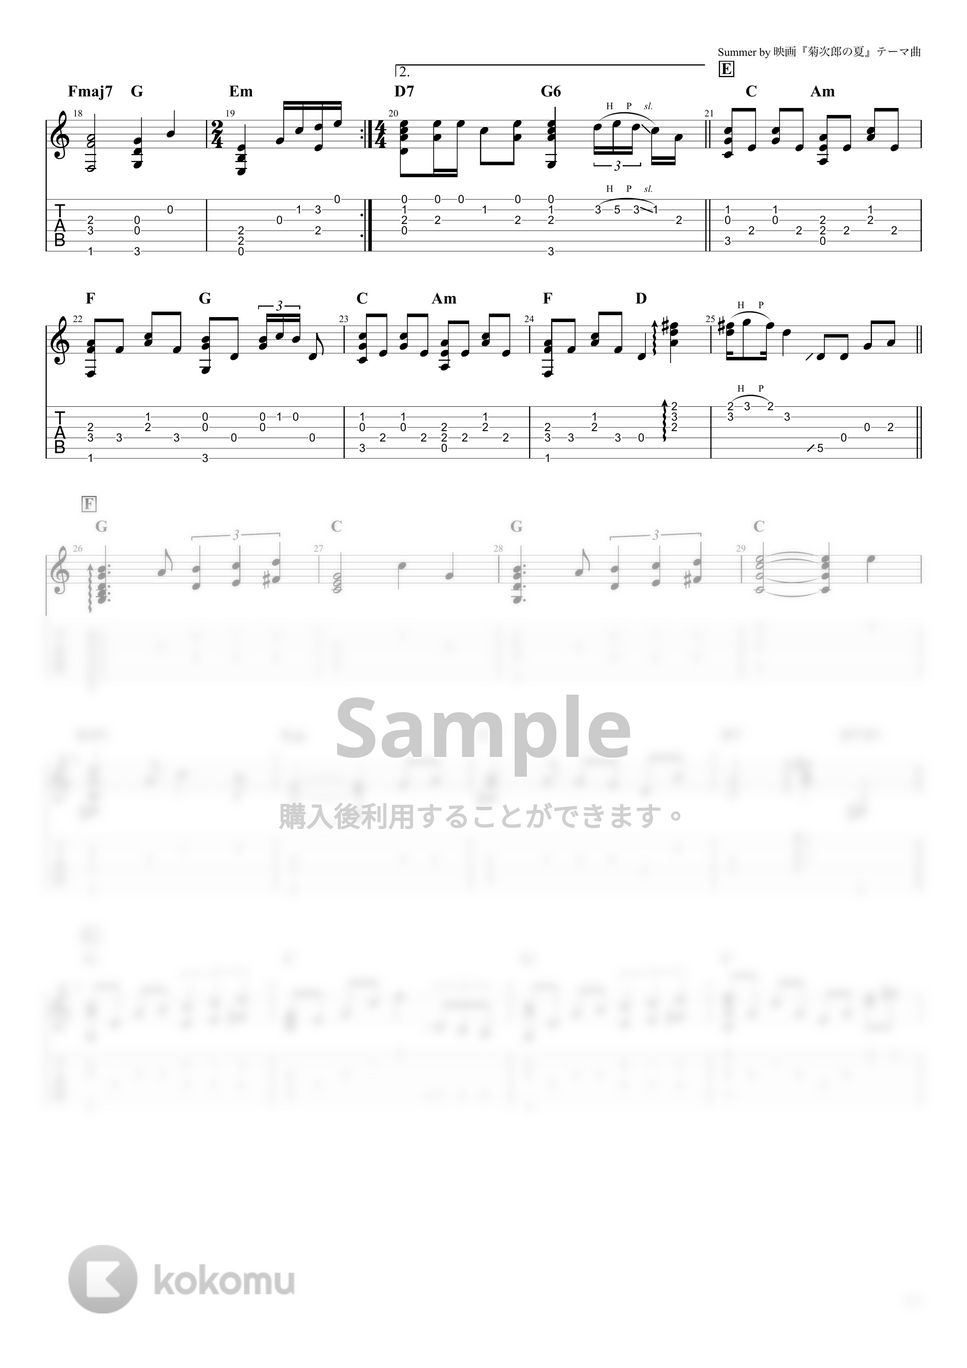 久石譲 - summer (ソロギター) by たまごどり